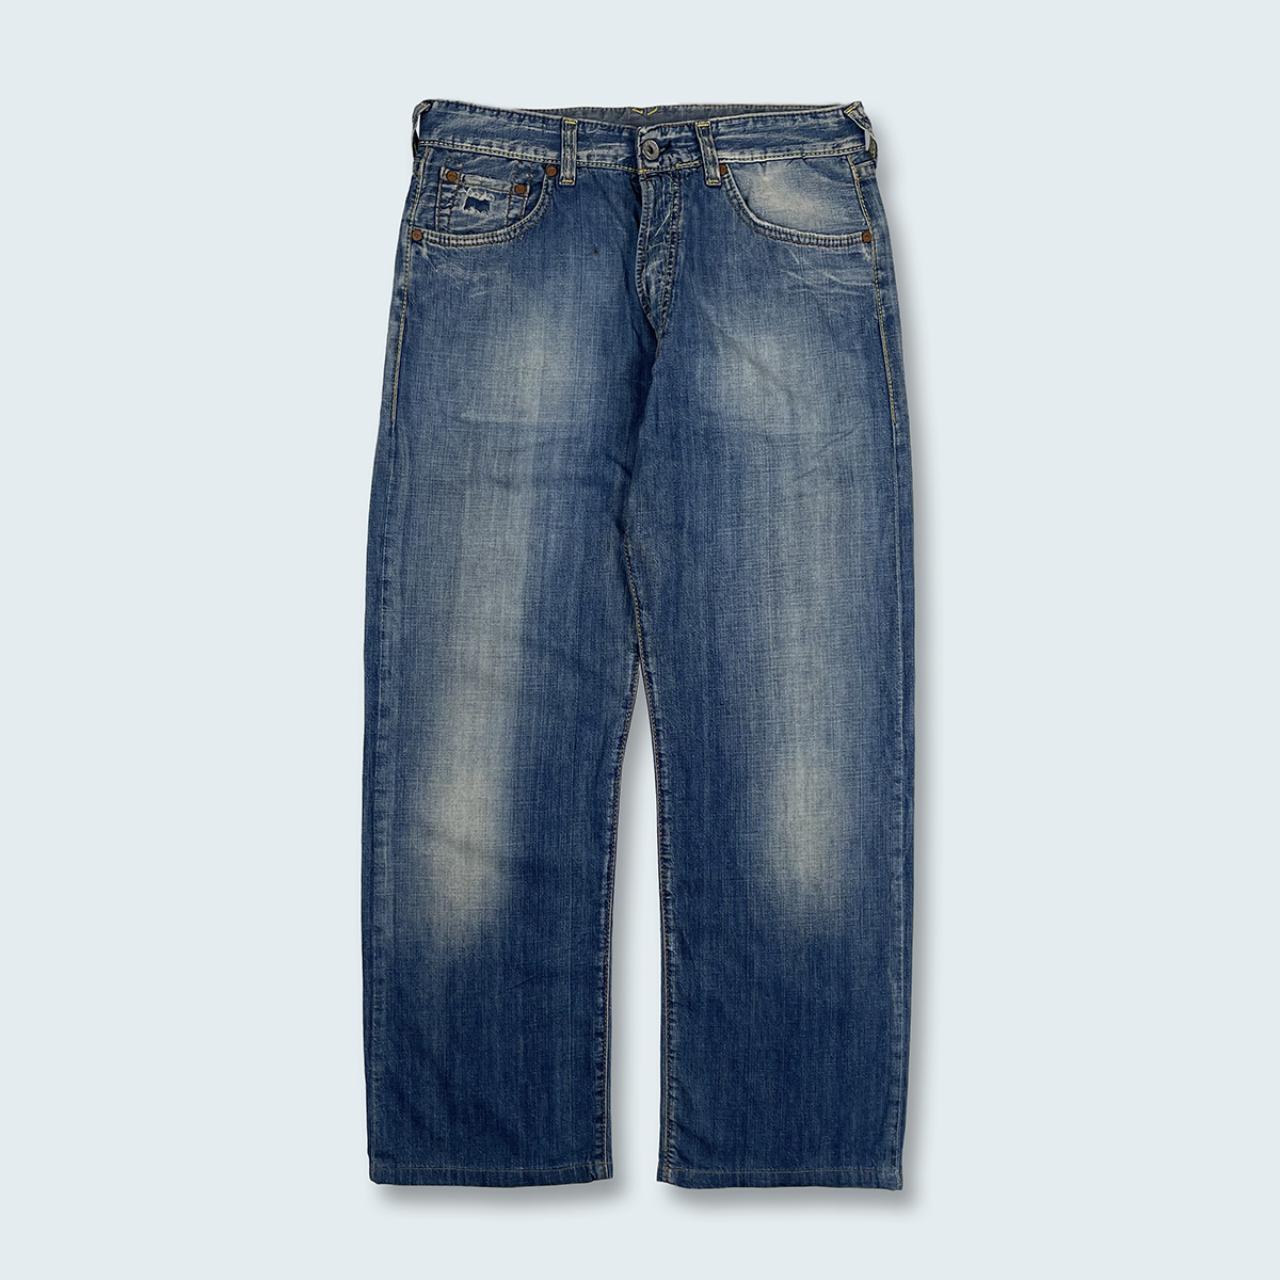 Authentic Vintage Evisu Jeans  (32")